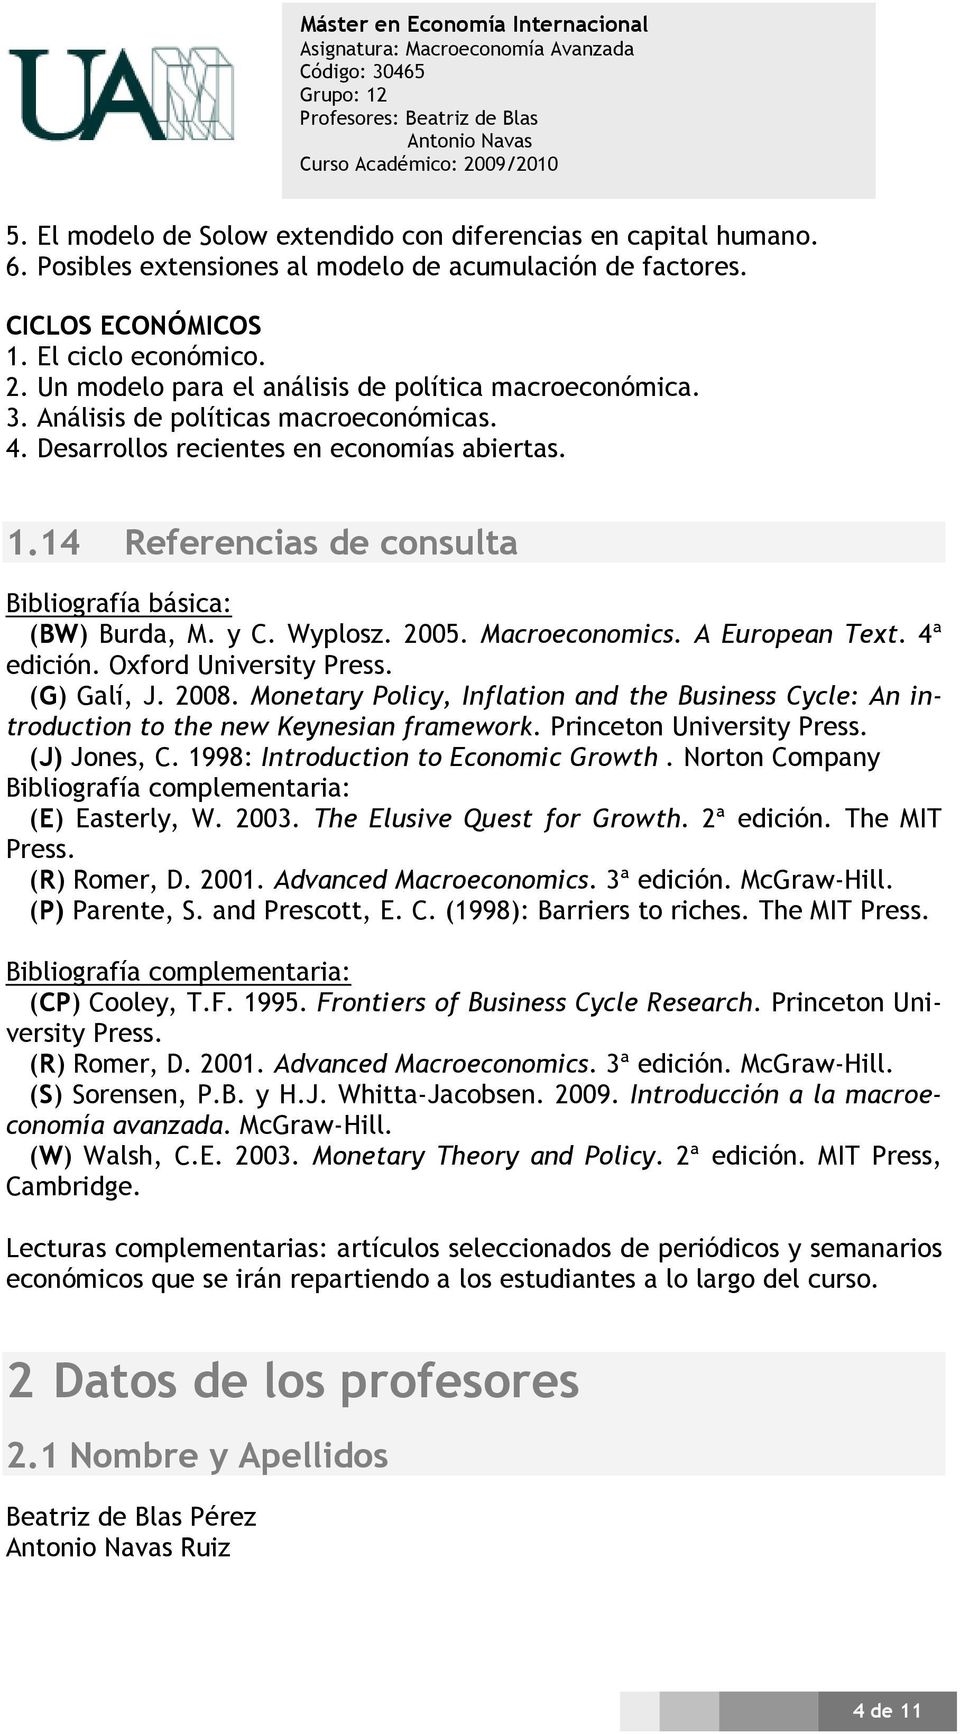 Wyplosz. 2005. Macroeconomics. A European Text. 4ª edición. Oxford University Press. (G) Galí, J. 2008.